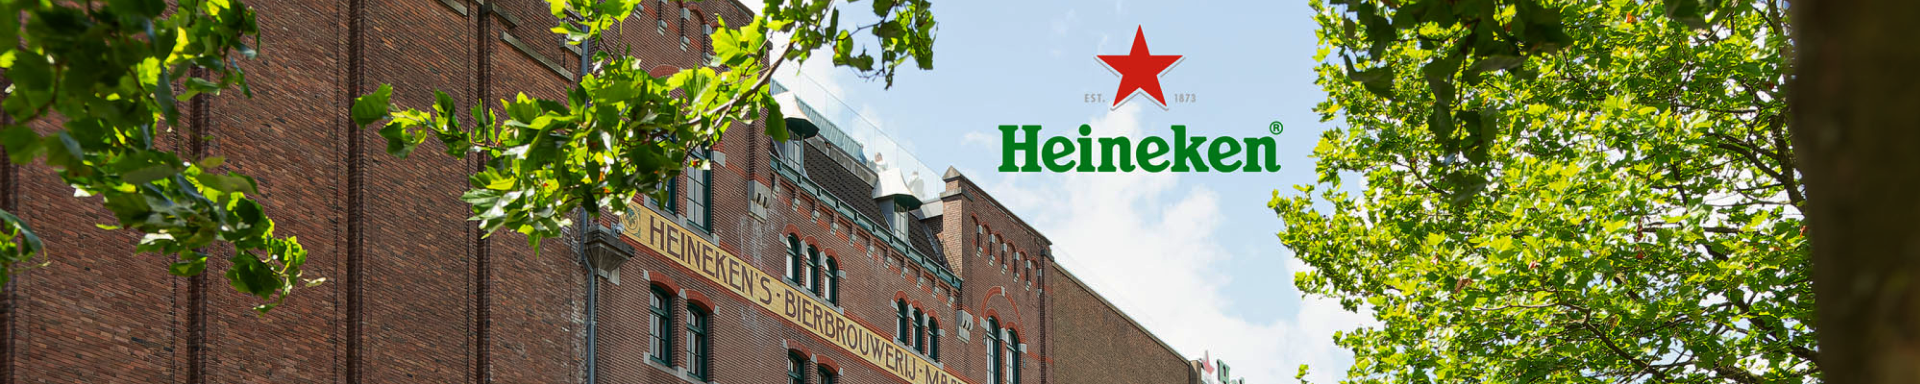 Heineken - Amsterdam